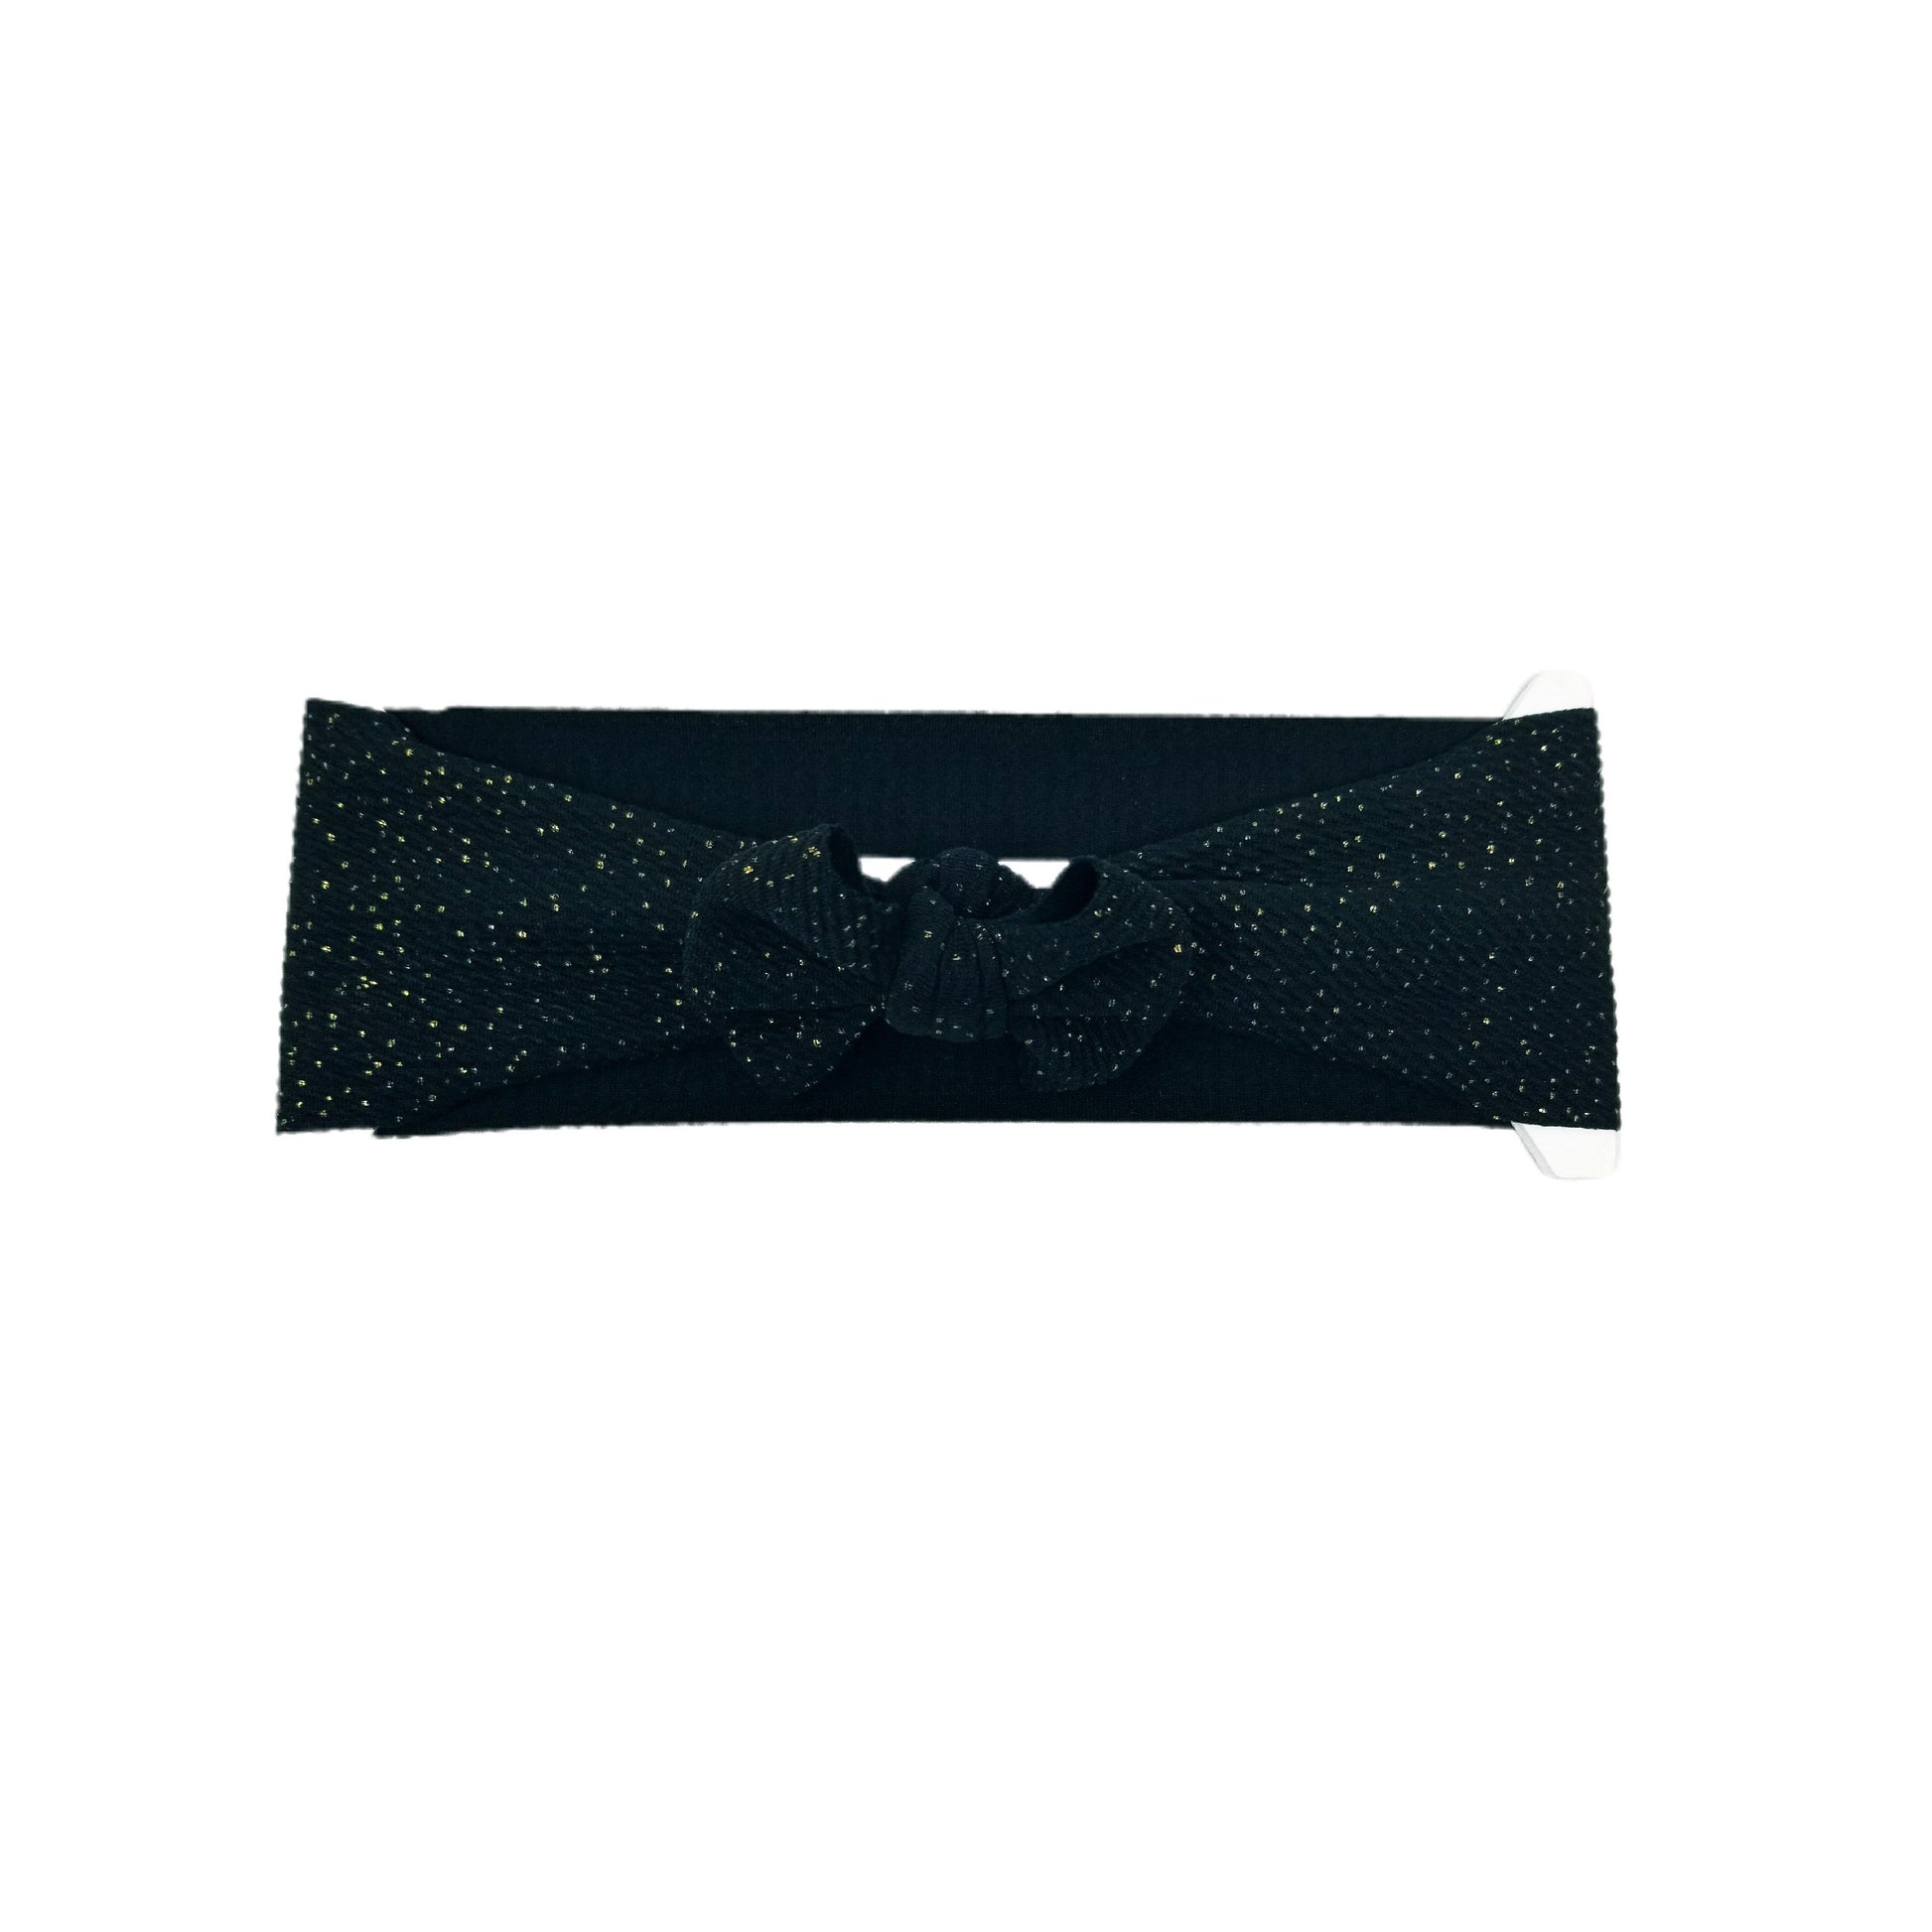 3 inch Gold-flecked Black Fabric Bow Headwrap